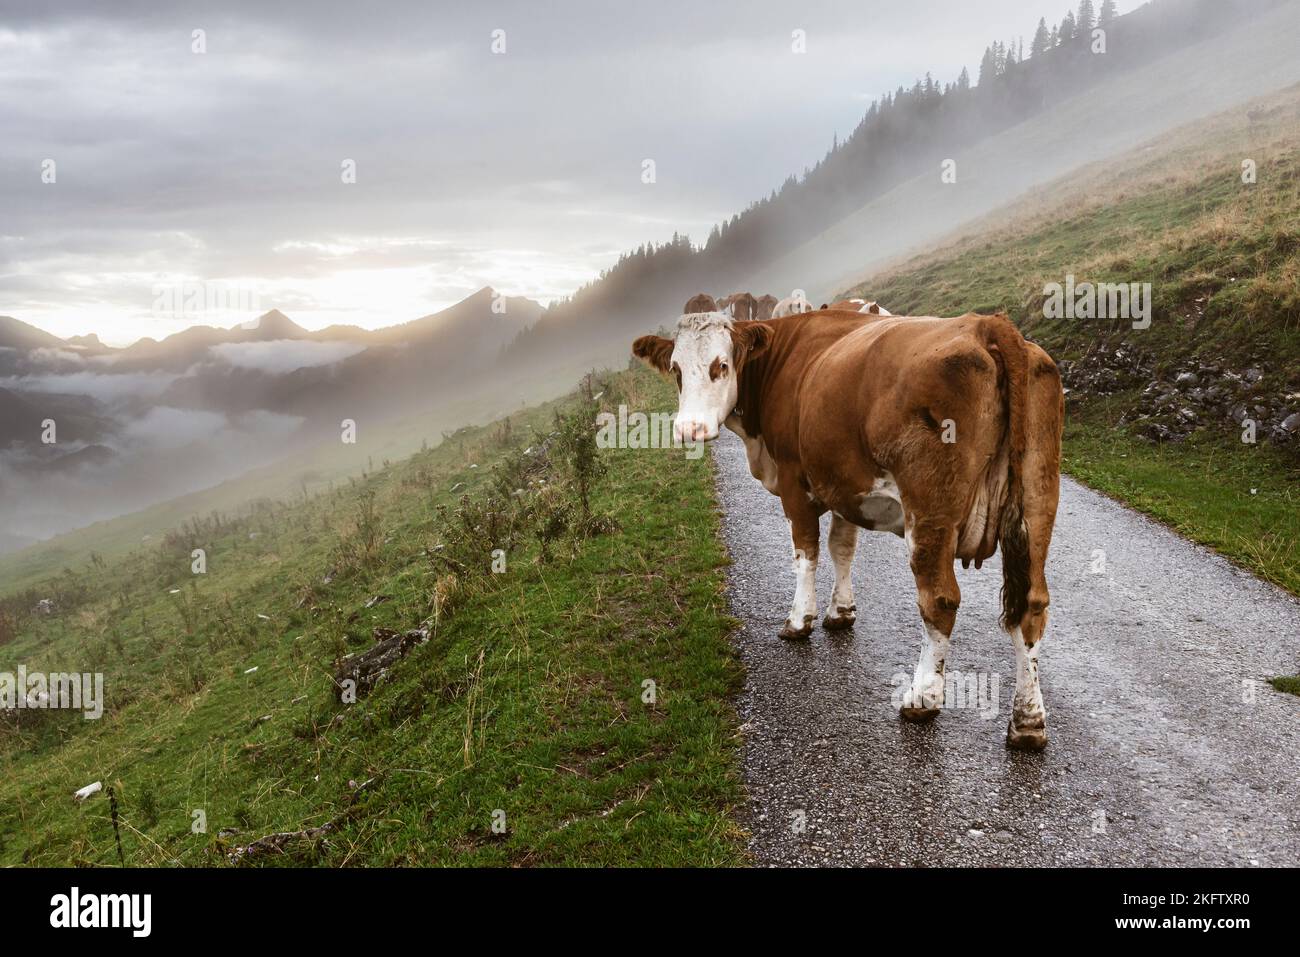 Una vaca ganadera manchada de color marrón camina a través de la niebla a lo largo de un camino a los prados alpinos después de una tormenta de relámpagos y mira a la cámara, Ackernalm Foto de stock